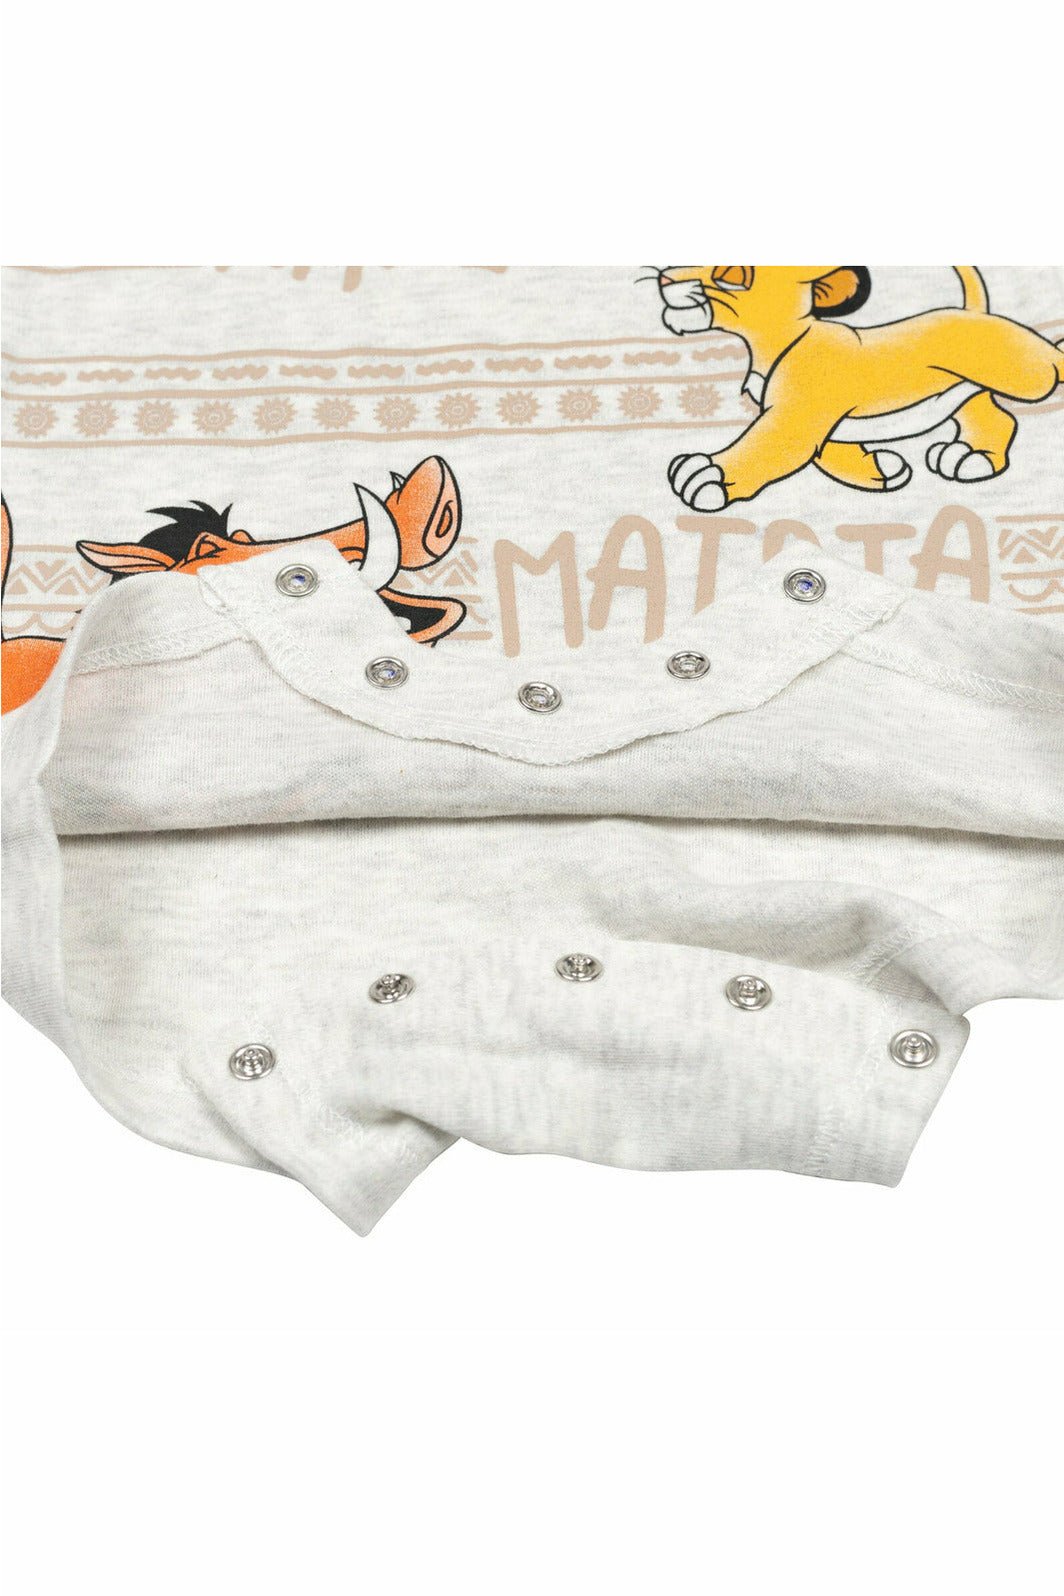 Lion King Short Sleeve Romper & Sunhat - imagikids